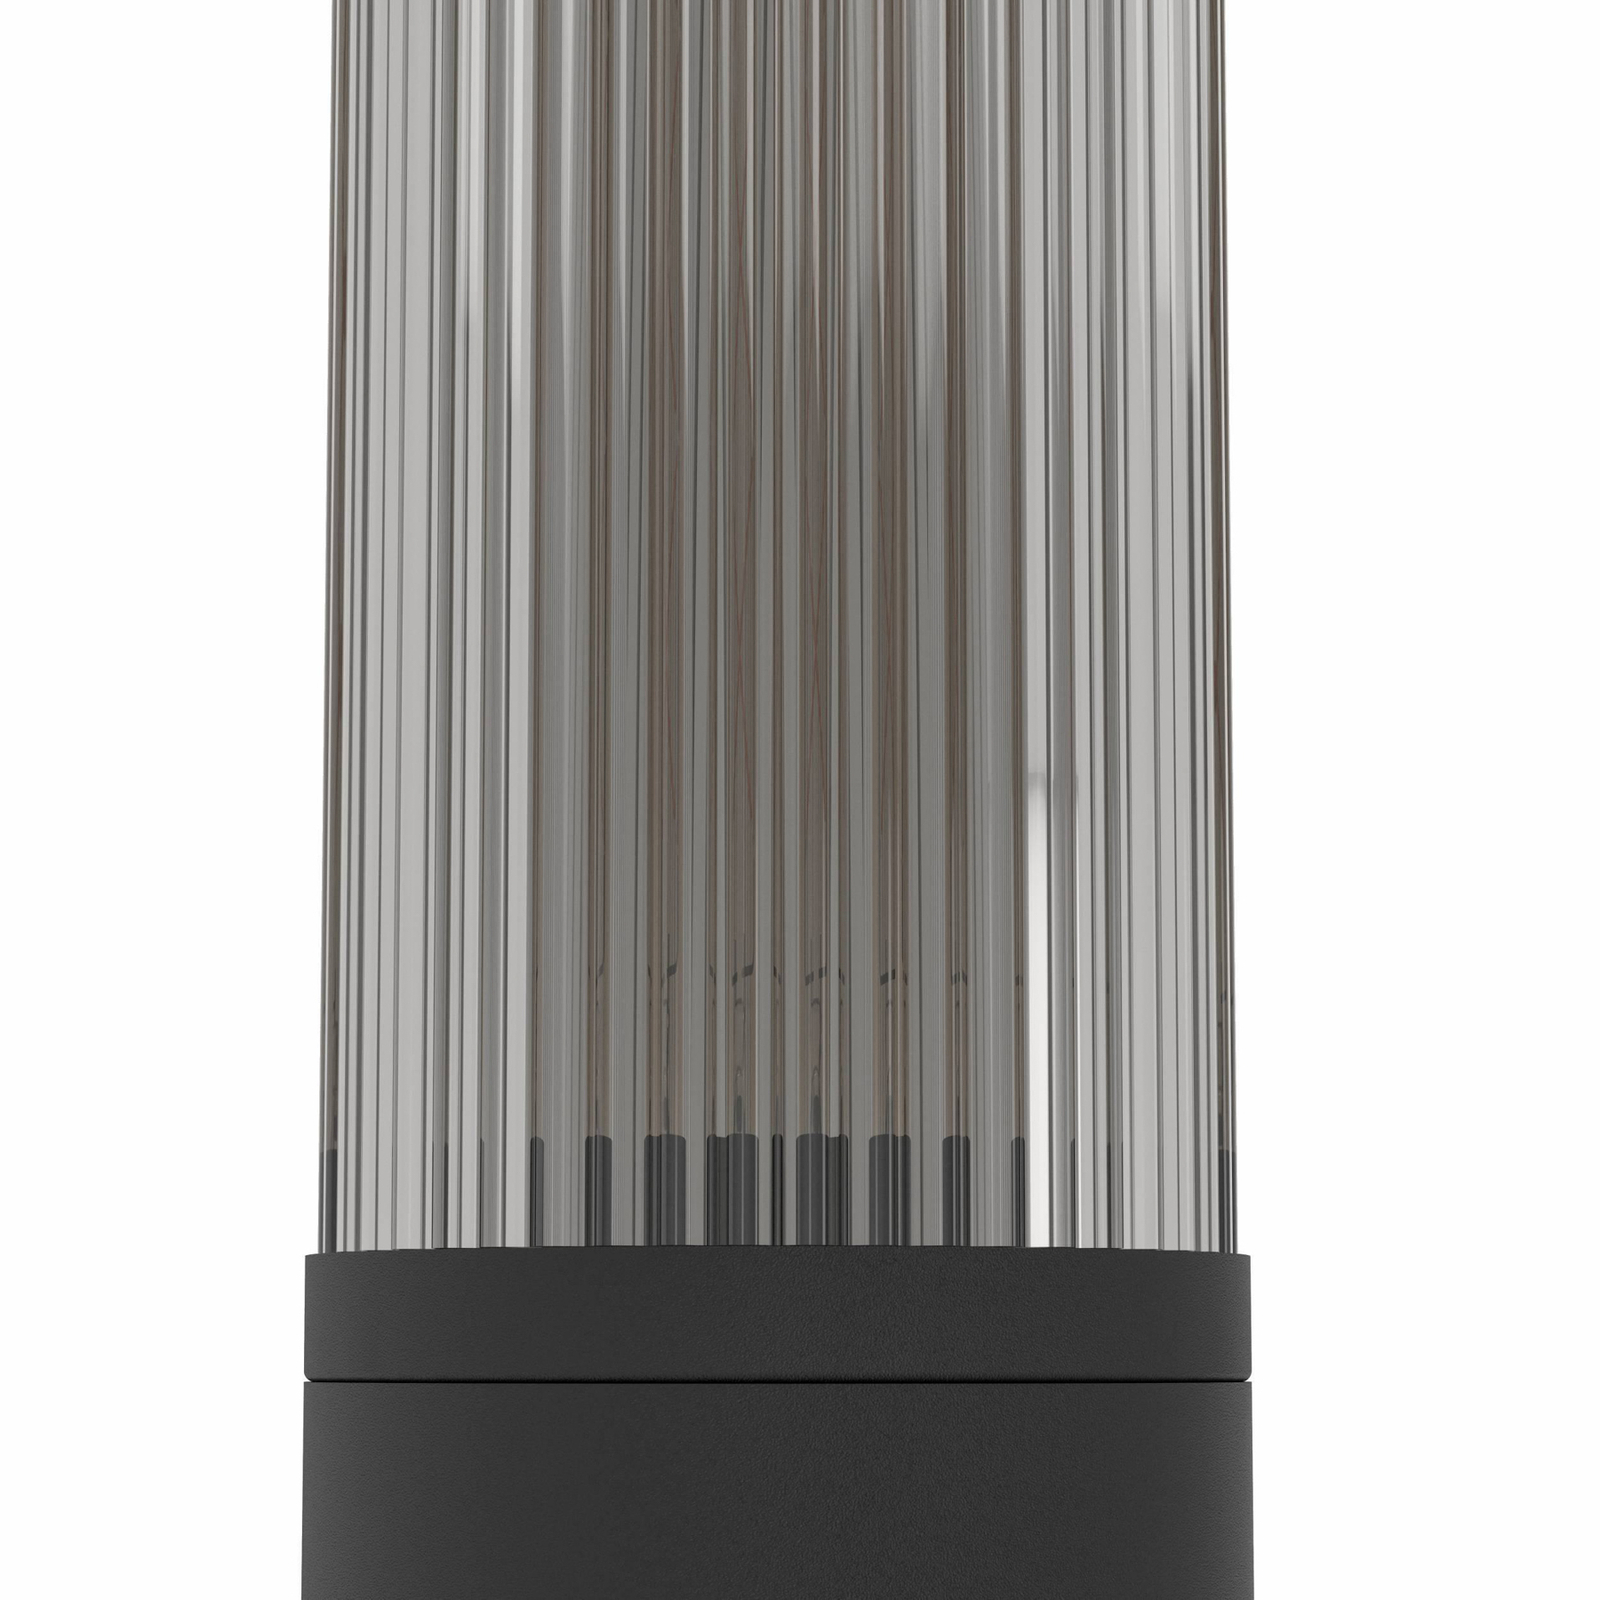 Luceafăr Salle, înălțime 110 cm, negru, aluminiu